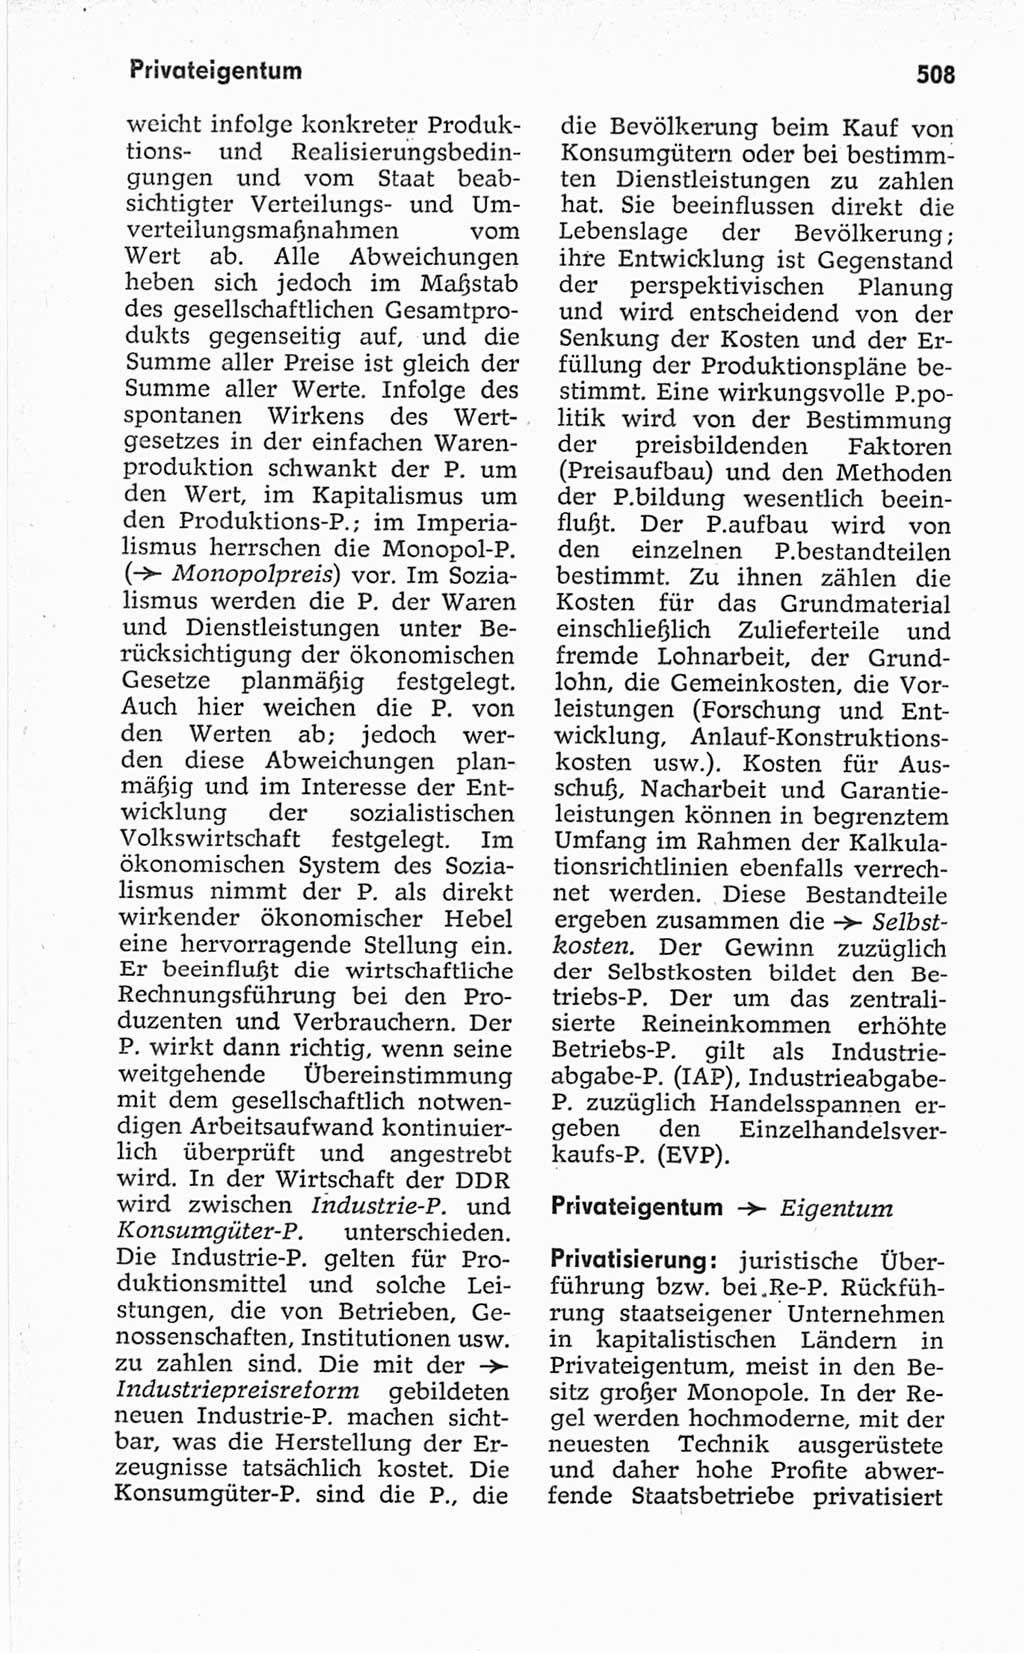 Kleines politisches Wörterbuch [Deutsche Demokratische Republik (DDR)] 1967, Seite 508 (Kl. pol. Wb. DDR 1967, S. 508)